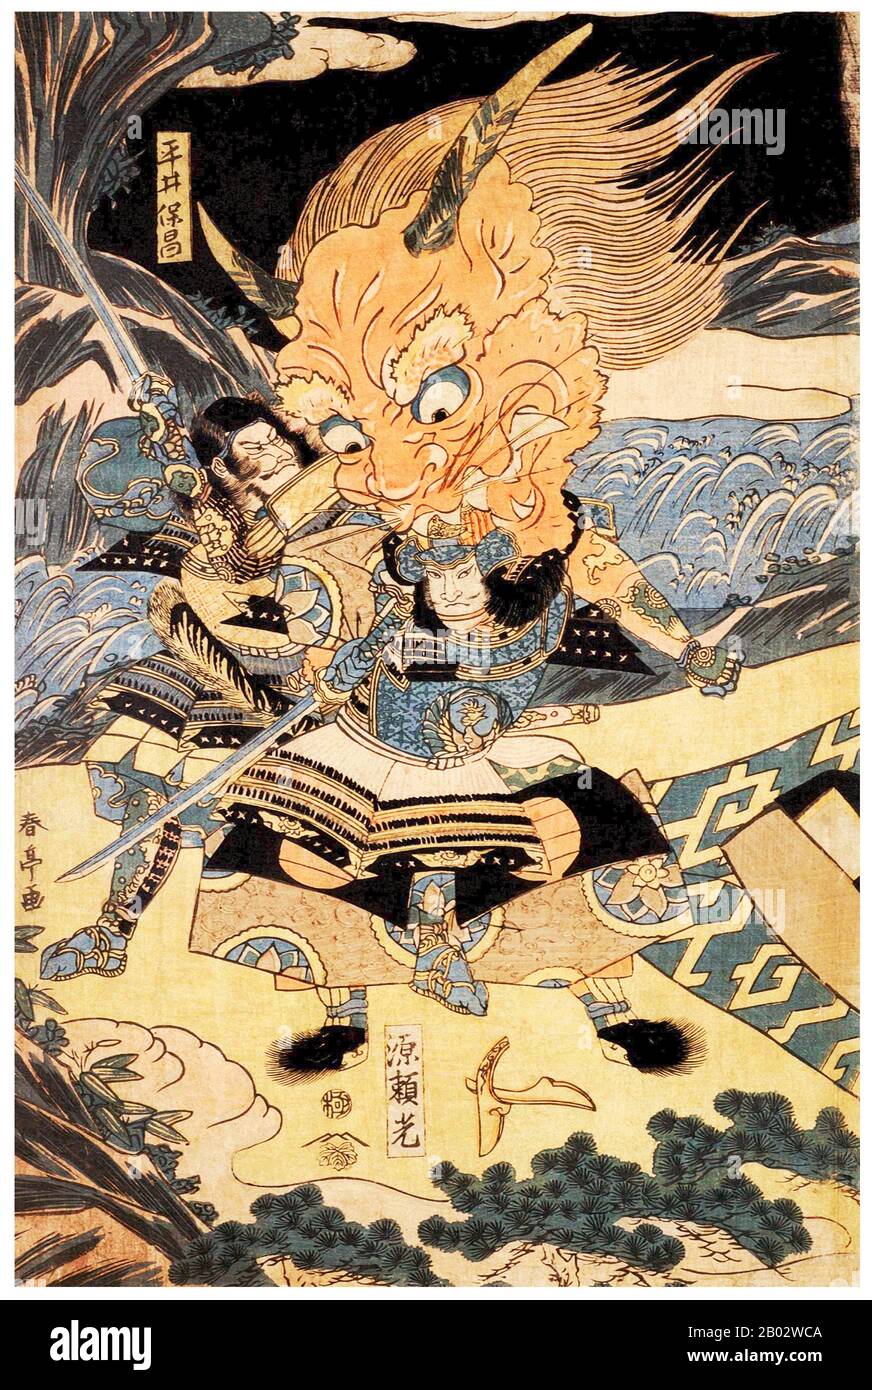 Minamoto no Yorimitsu (948 - 29. August 1021), auch Minamoto no Raiko genannt, diente zusammen mit seinem Bruder Yorinobu den Regenten des Fujiwara-Clans und traf die gewalttätigen Maßnahmen, die Fujiwara selbst nicht ergreifen konnte. Er ist einer der ältesten Minamoto der historischen Notiz für seine militärischen Exploits und bekannt für die Bequetschen der Banditen von Oeyama. Sein treuer Dienst brachte ihm die Gouverneure der Provinz Izu, Kozuke und einige andere wiederum sowie eine Reihe weiterer hoher Regierungsstellen ein. Yorimitsu diente als Kommandeur eines Regiments der Kaiserlichen Garde und als Sekretar Stockfoto